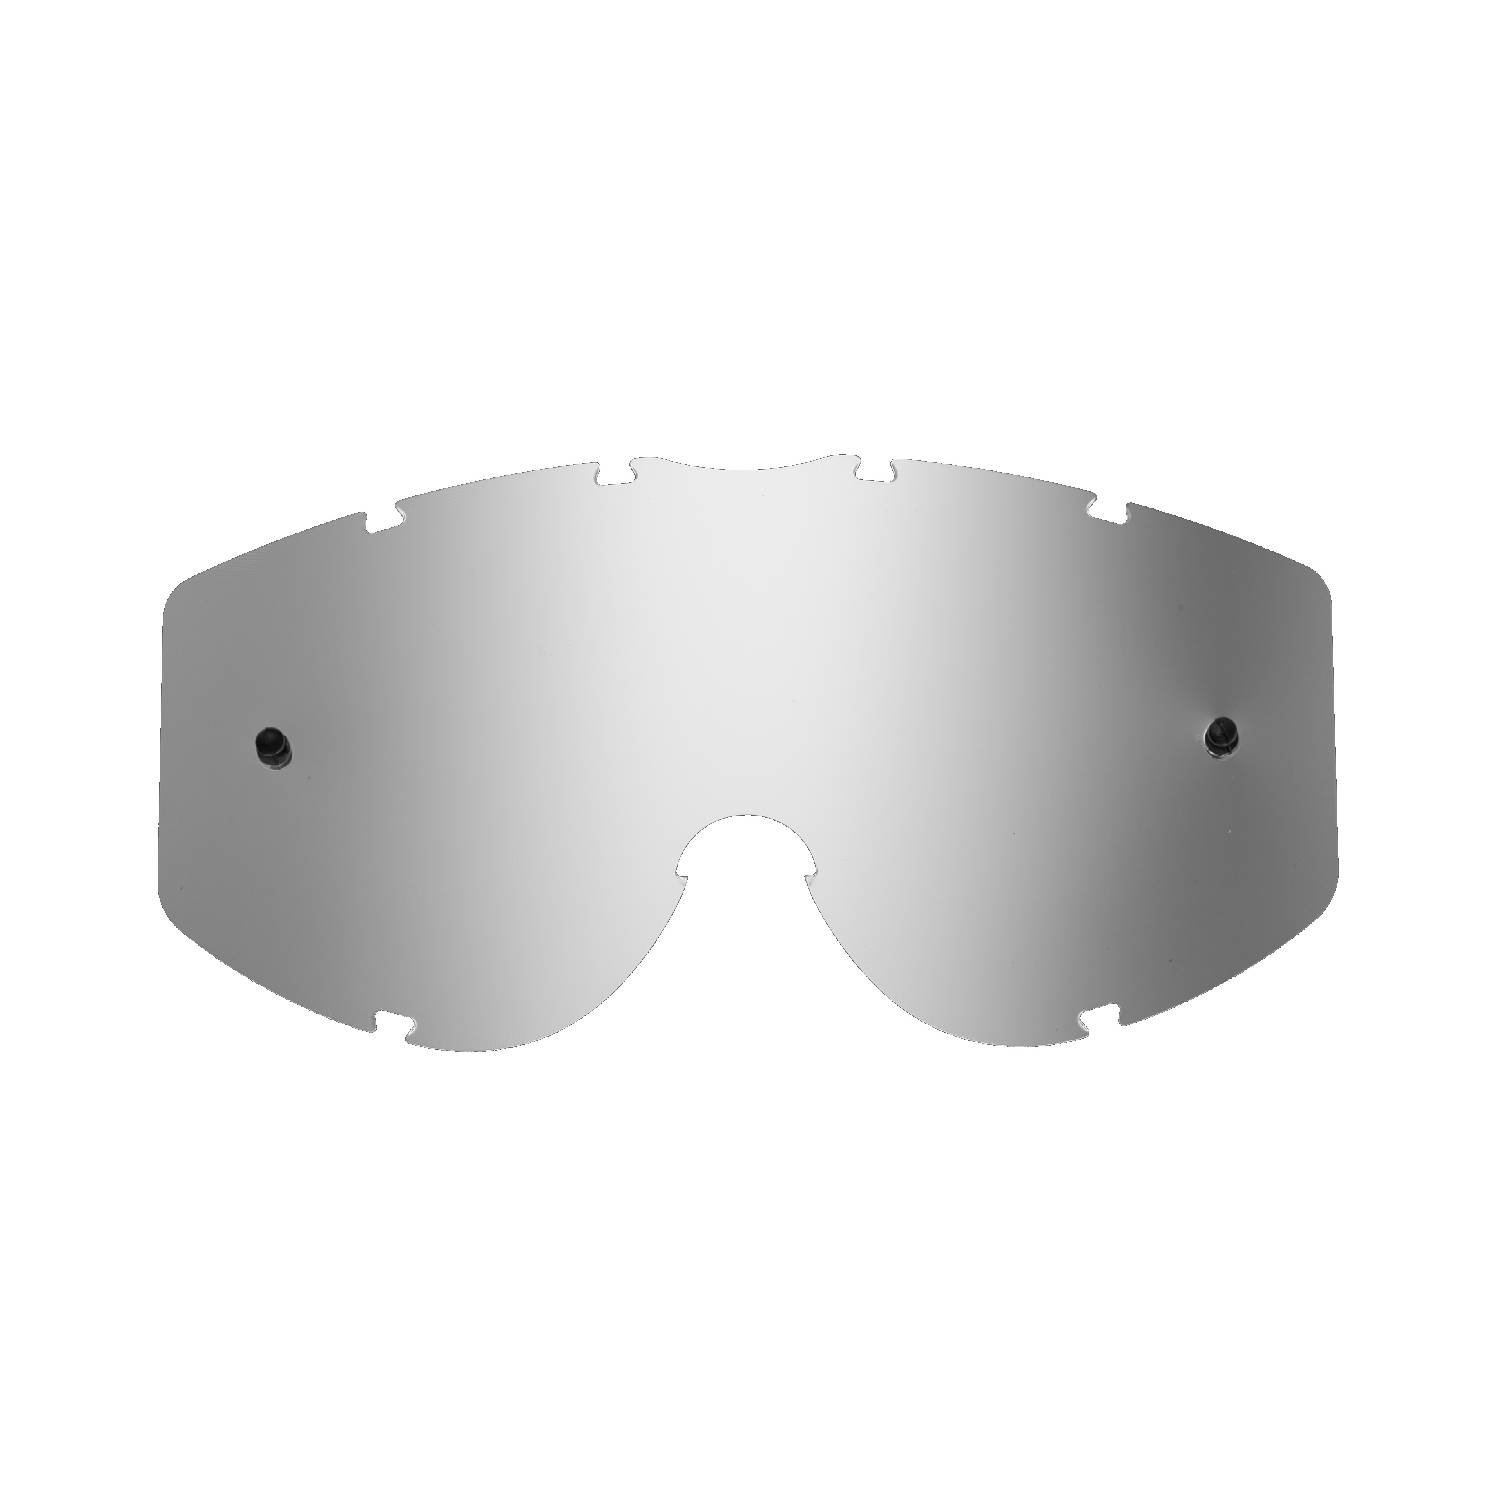 silver-toned mirrored replacement lenses for goggles compatible for Progrip 3200 Venom / 3450 Riot / 3400 Menace / 3201 Atzaki / 3204 Dark Side / 3301 Naswa goggle